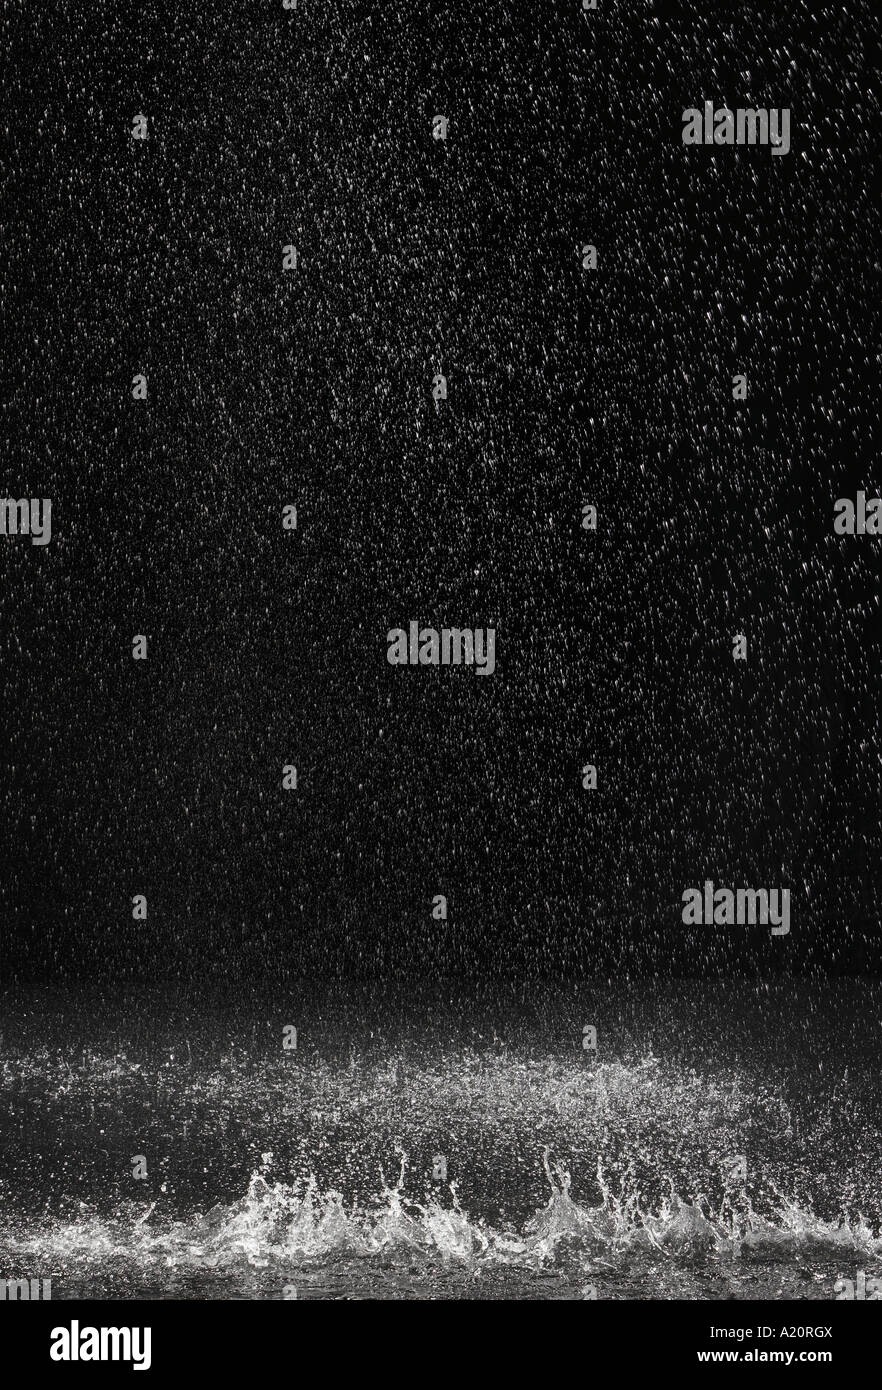 Dark background shot of rain falling Stock Photo